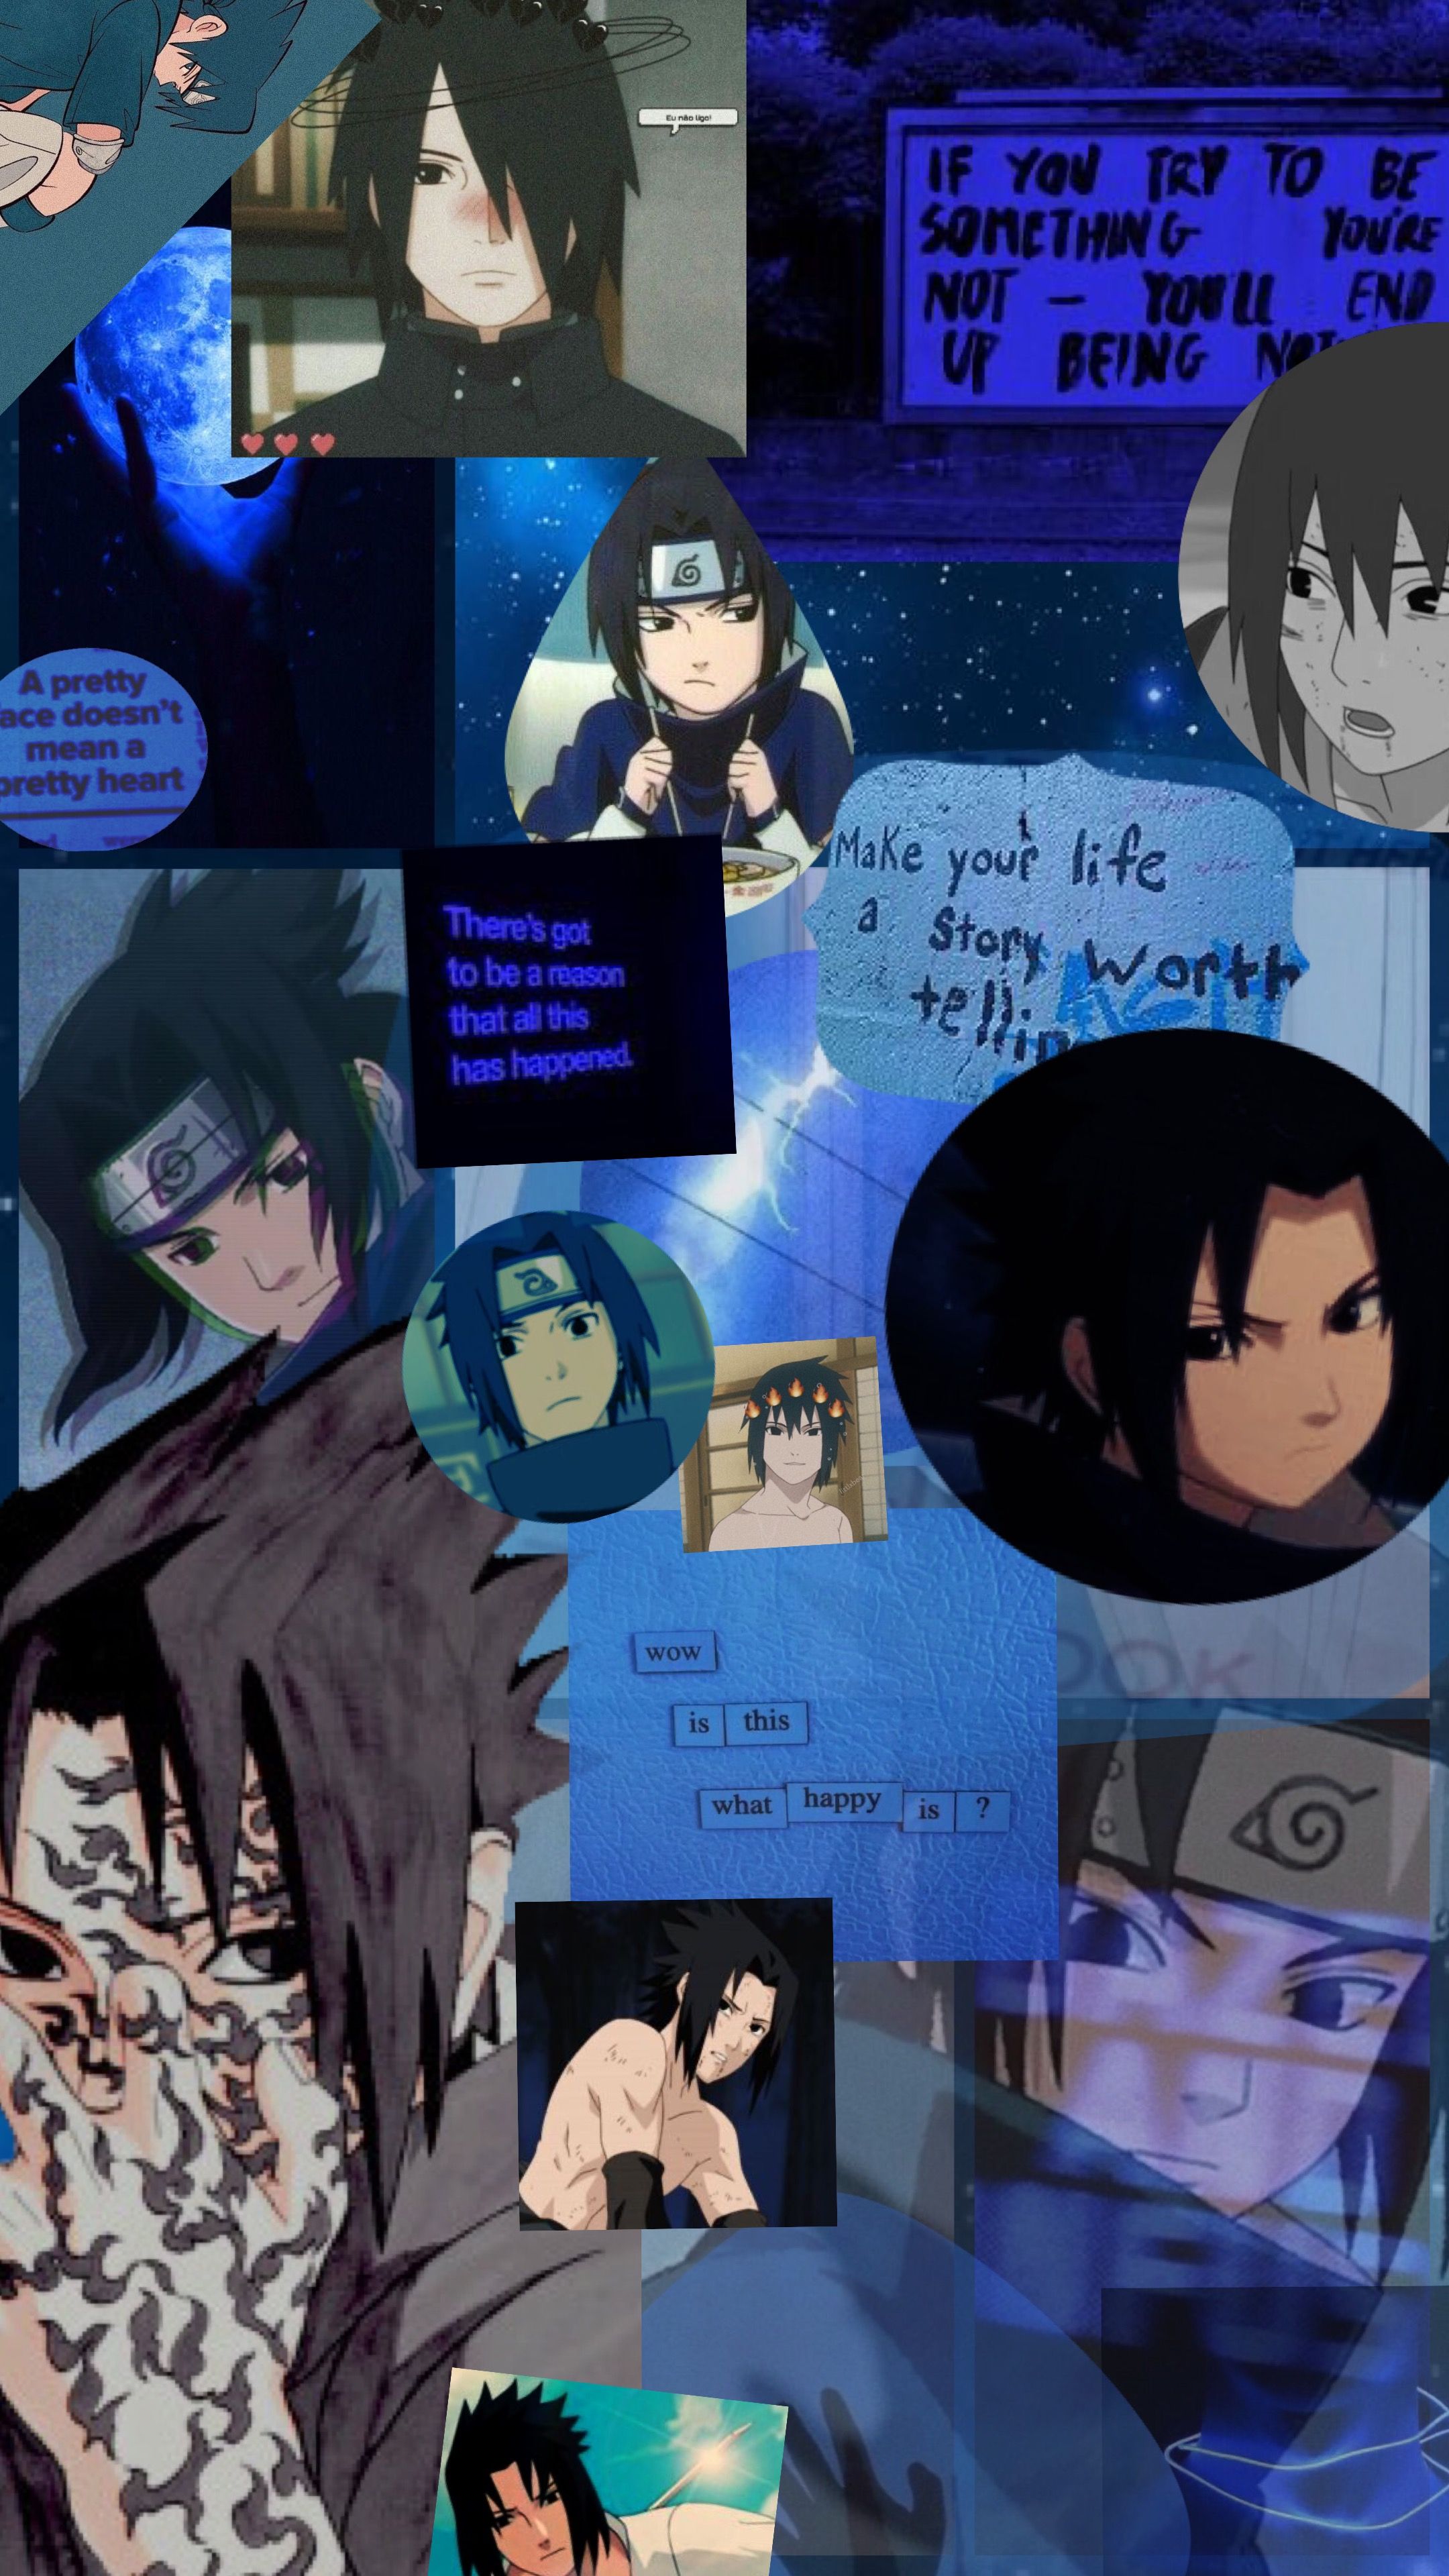 Sasuke Aesthetic Wallpaper by Gabs em 2020. Personagens naruto shippuden, Naruto, Naruto shippuden